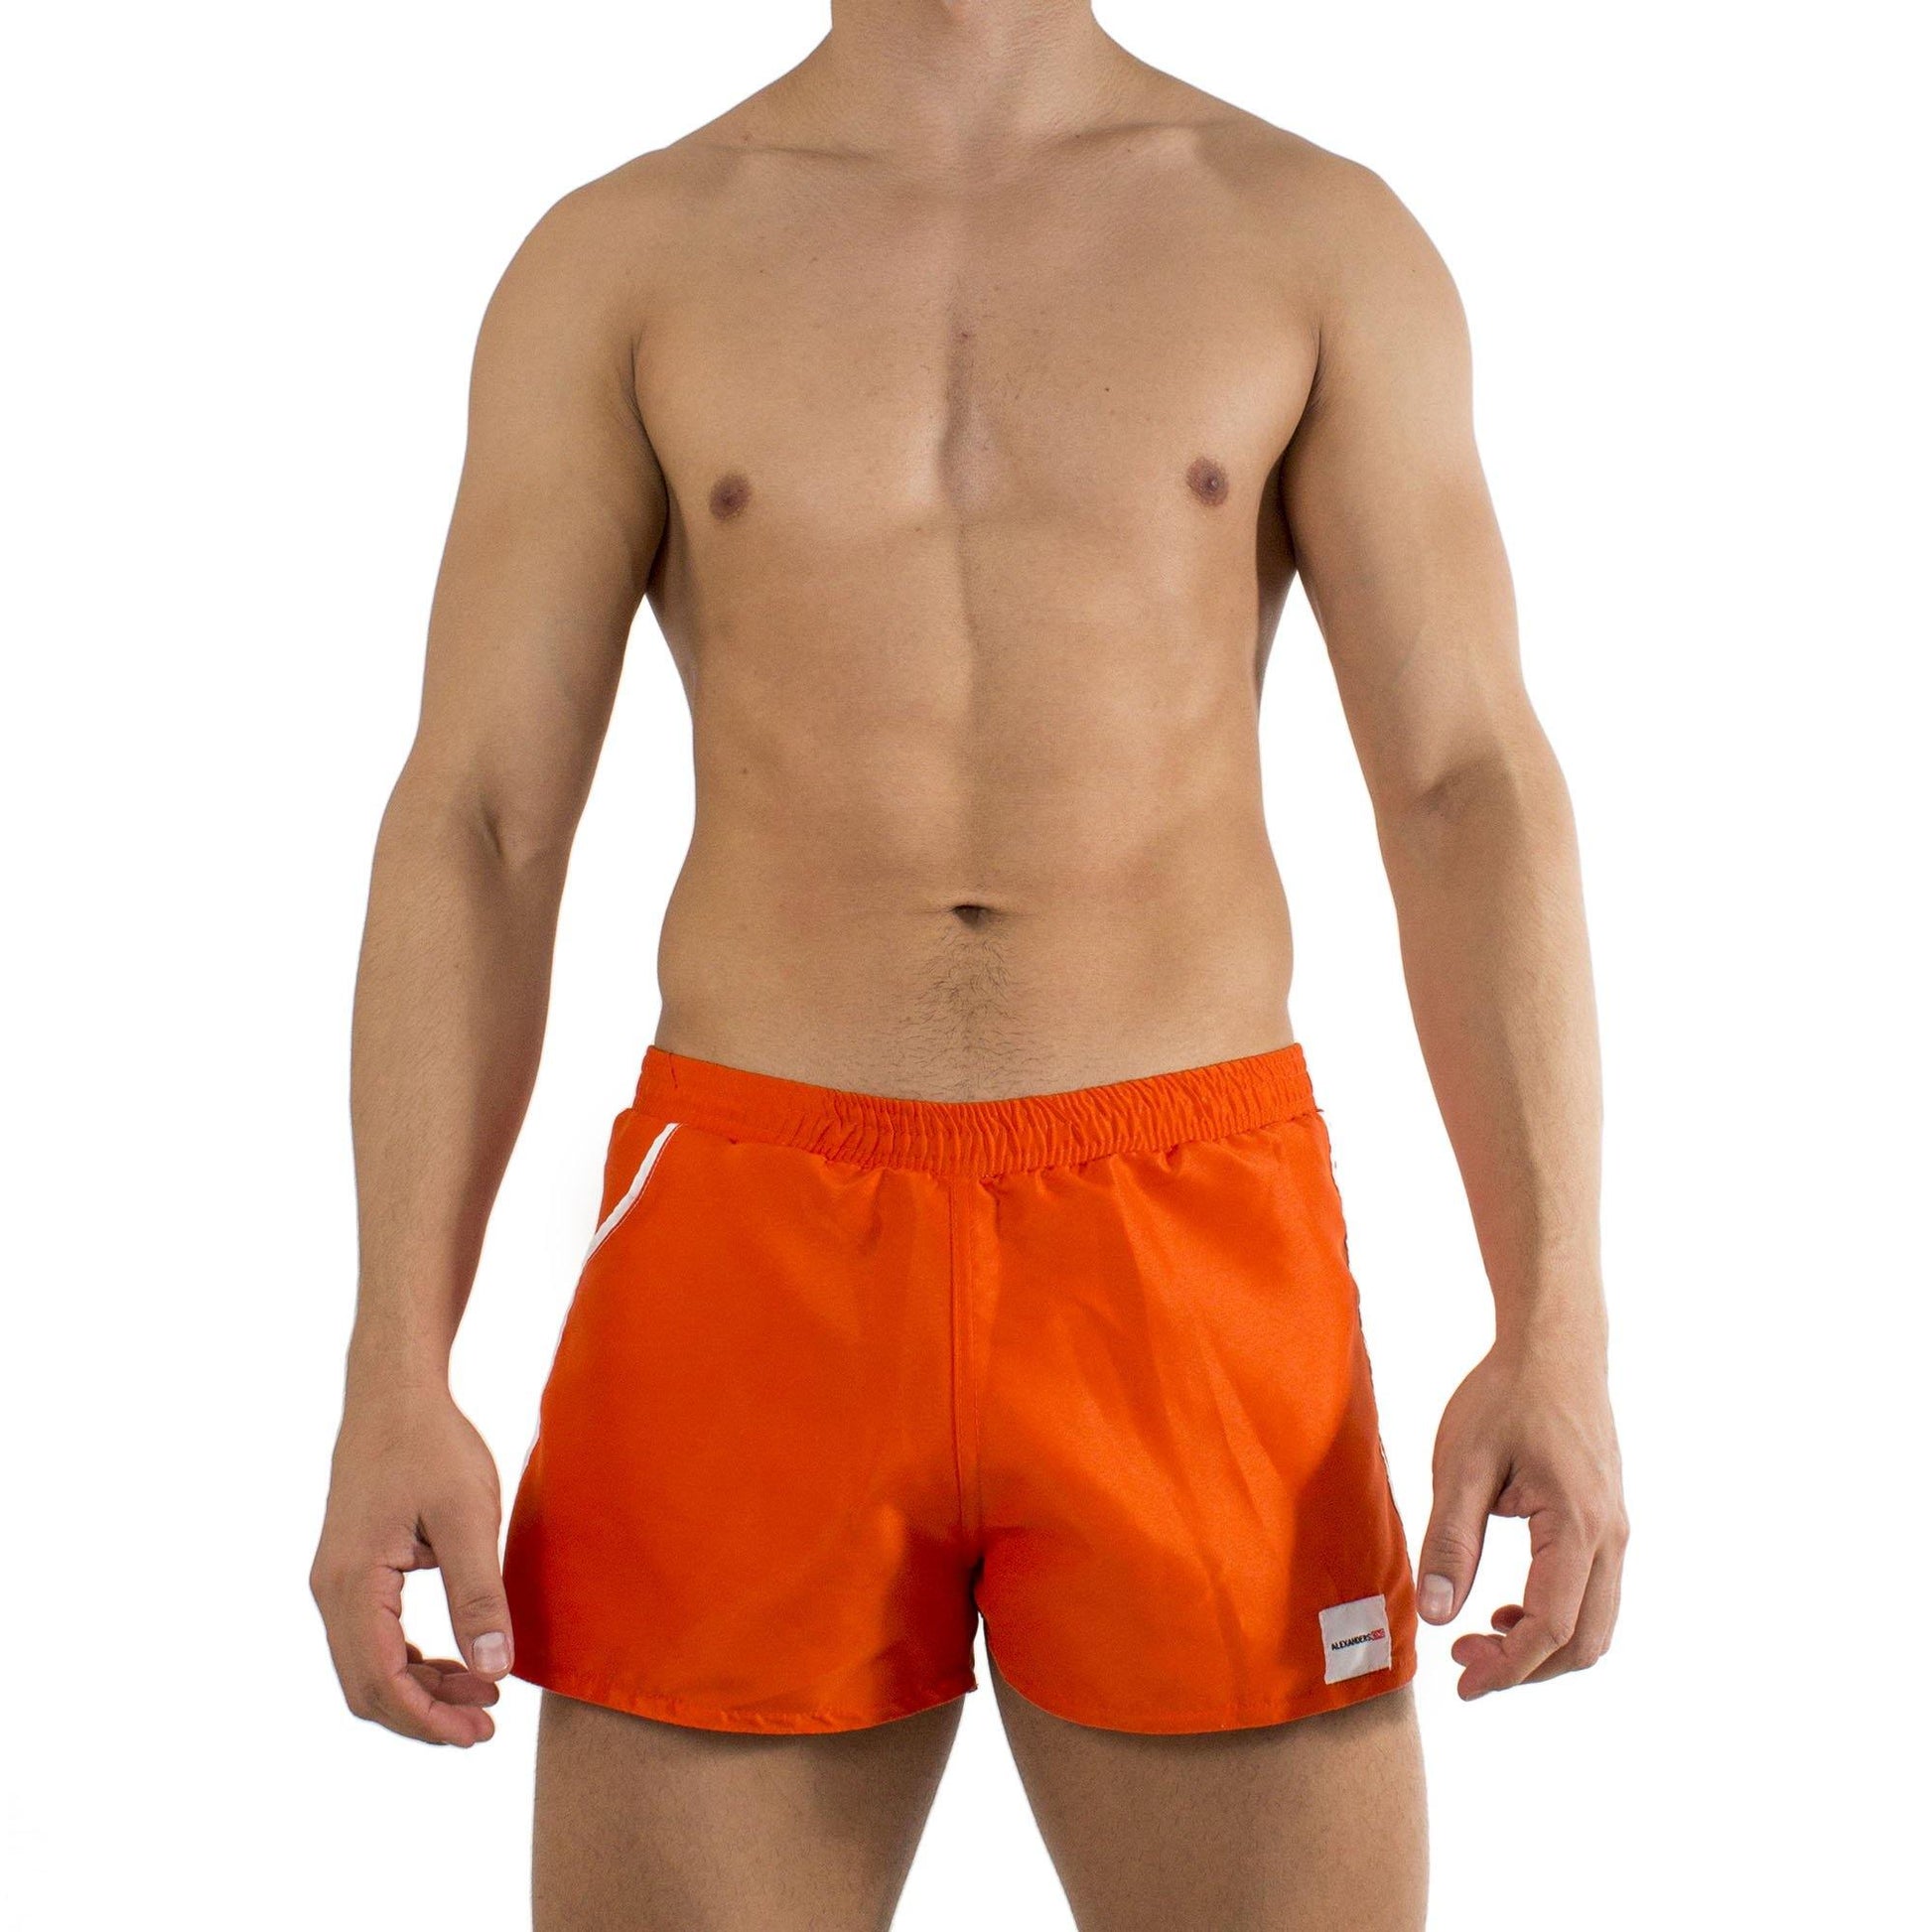 TS0007 - Traje de Ba̱o Short Naranja/Blanco - AlexandersKing Underwear